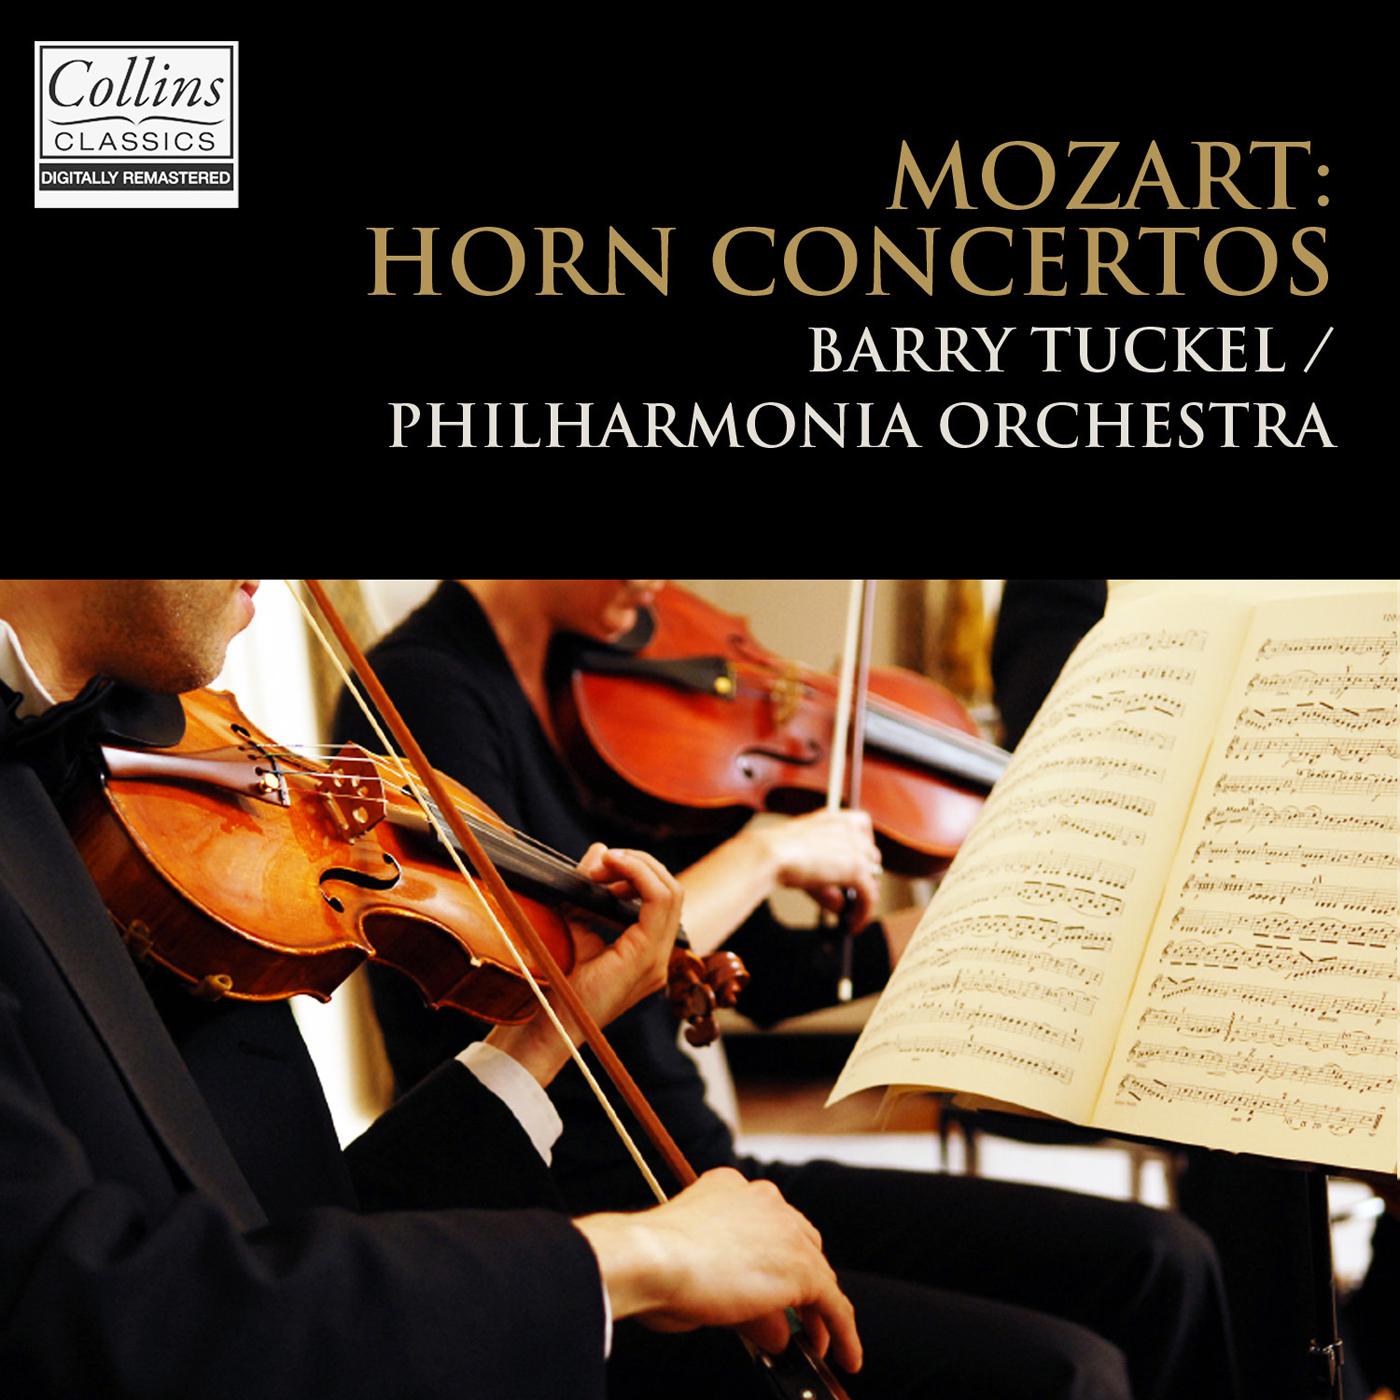 Horn Concerto No. 2 in E-Flat Major, K. 417: II. Andante